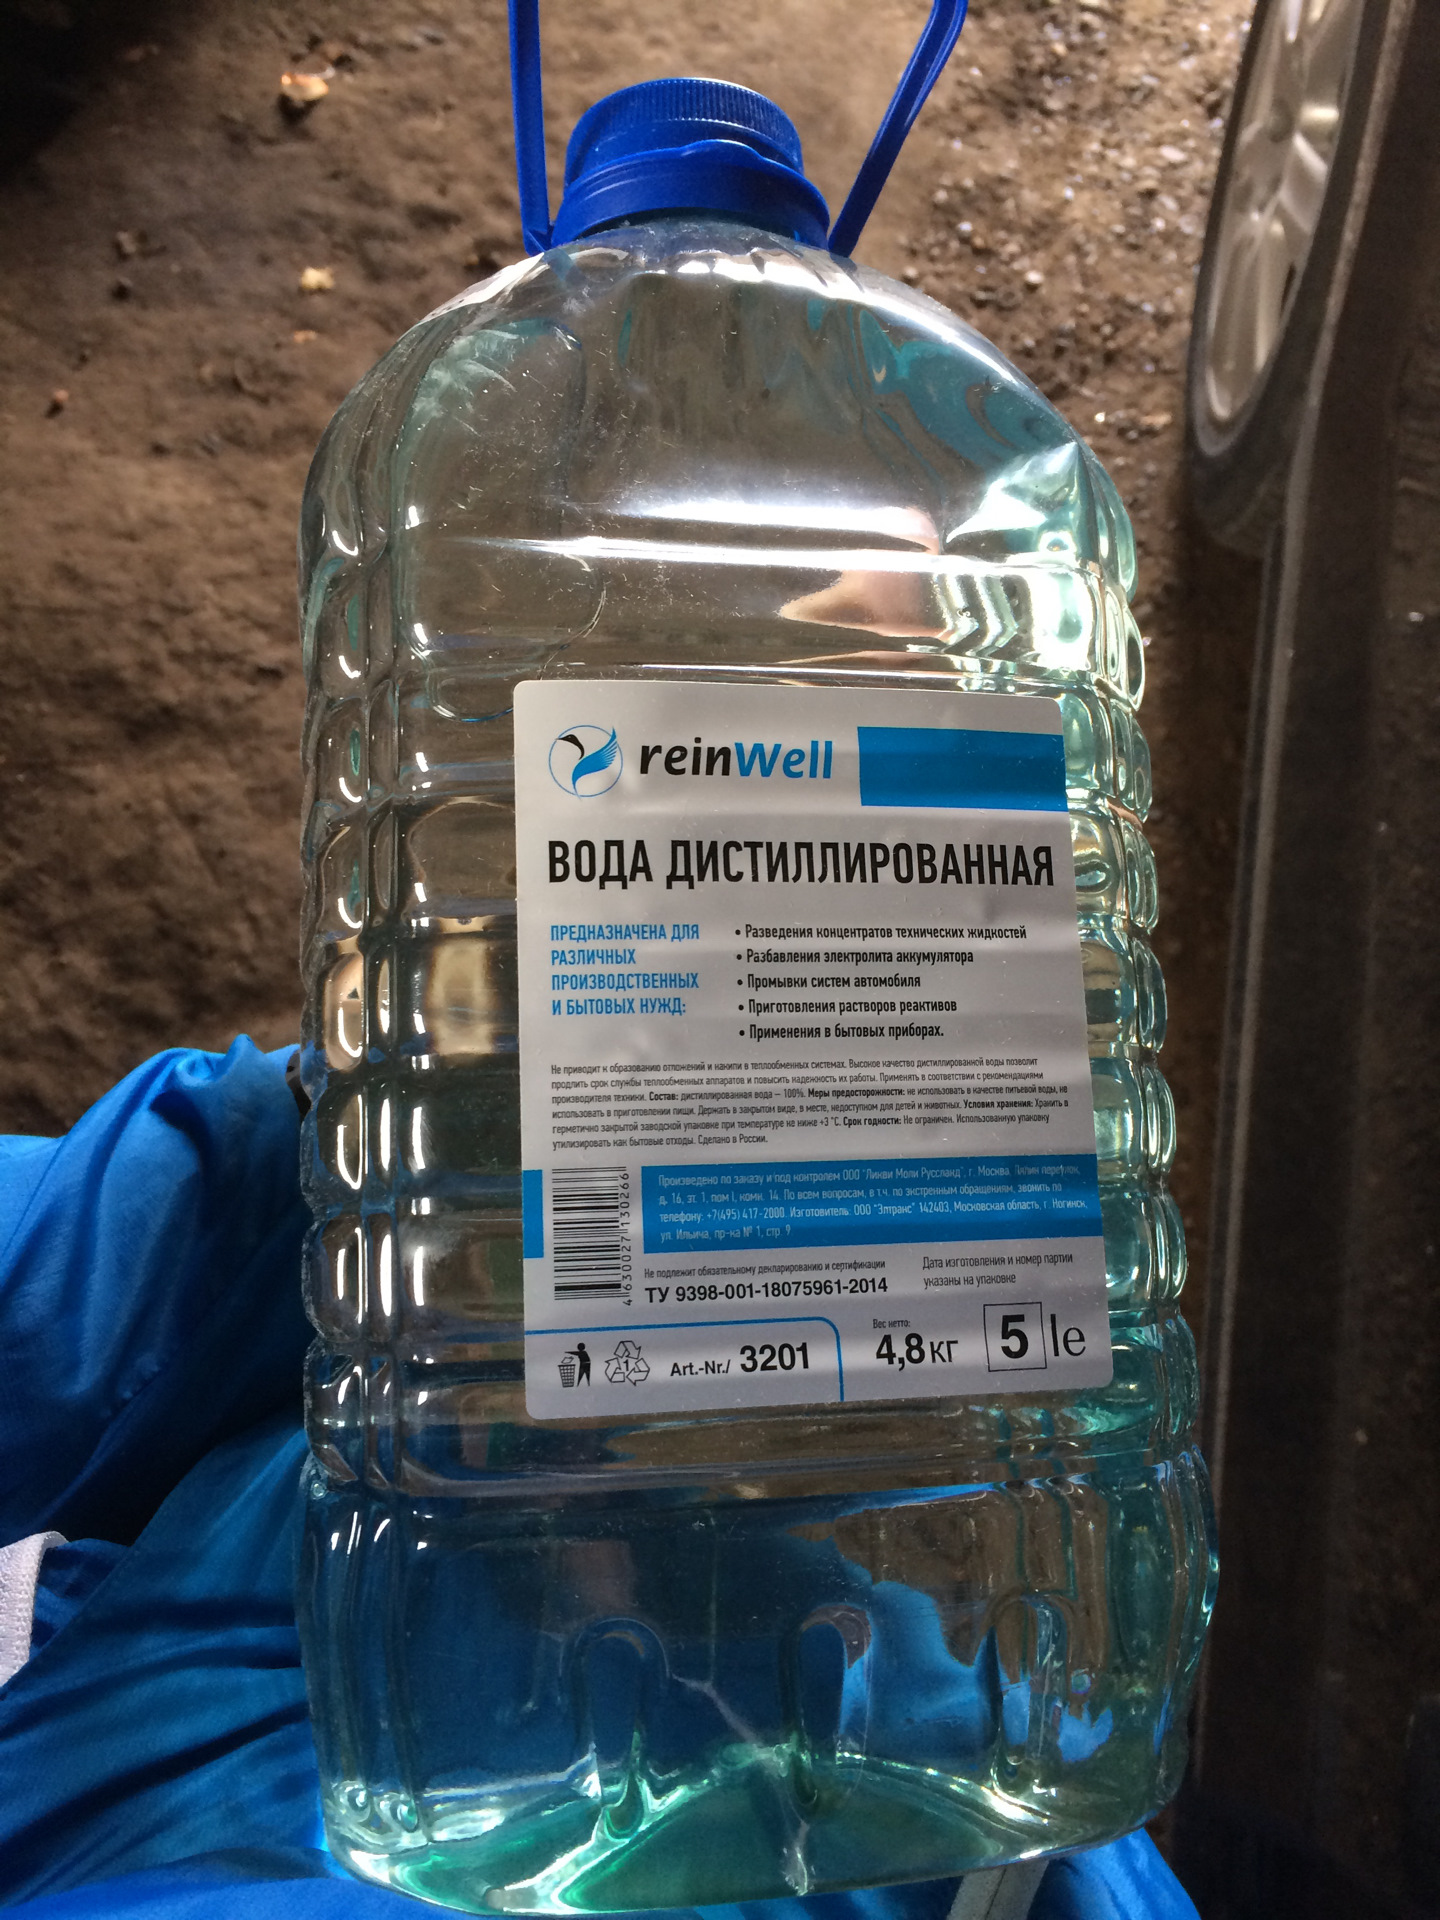 Анализ дистиллированной воды. 3201 REINWELL вода дистиллированная RW-02 (4,8 кг). REINWELL дистилированаяв Ода. Вода дистиллированная VAG. Дистиллированная вода REINWELL RW-02.